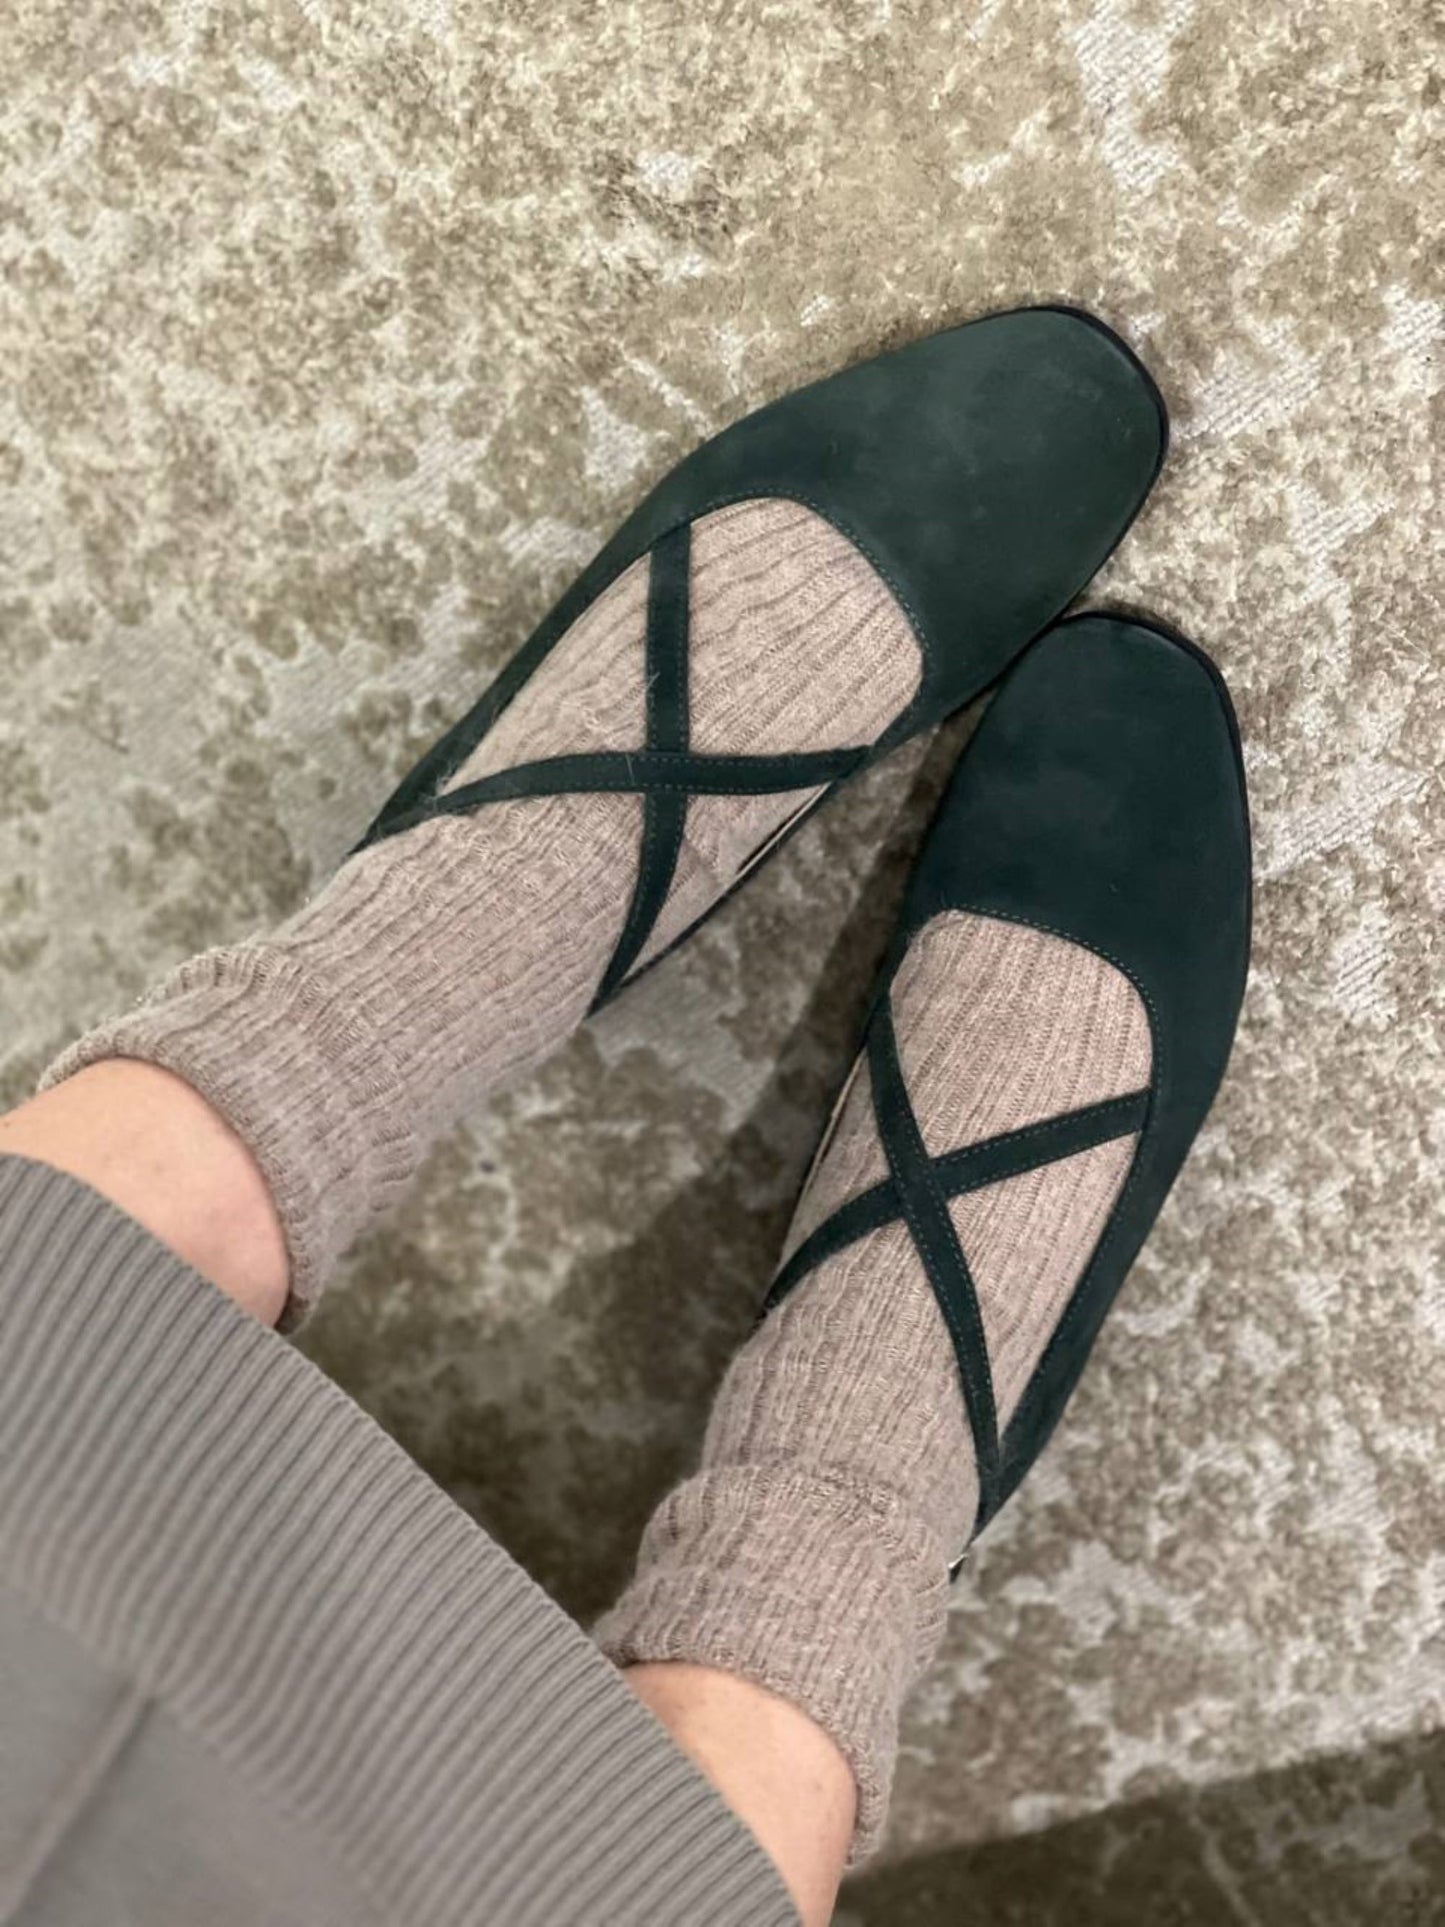 Angora socks in gray